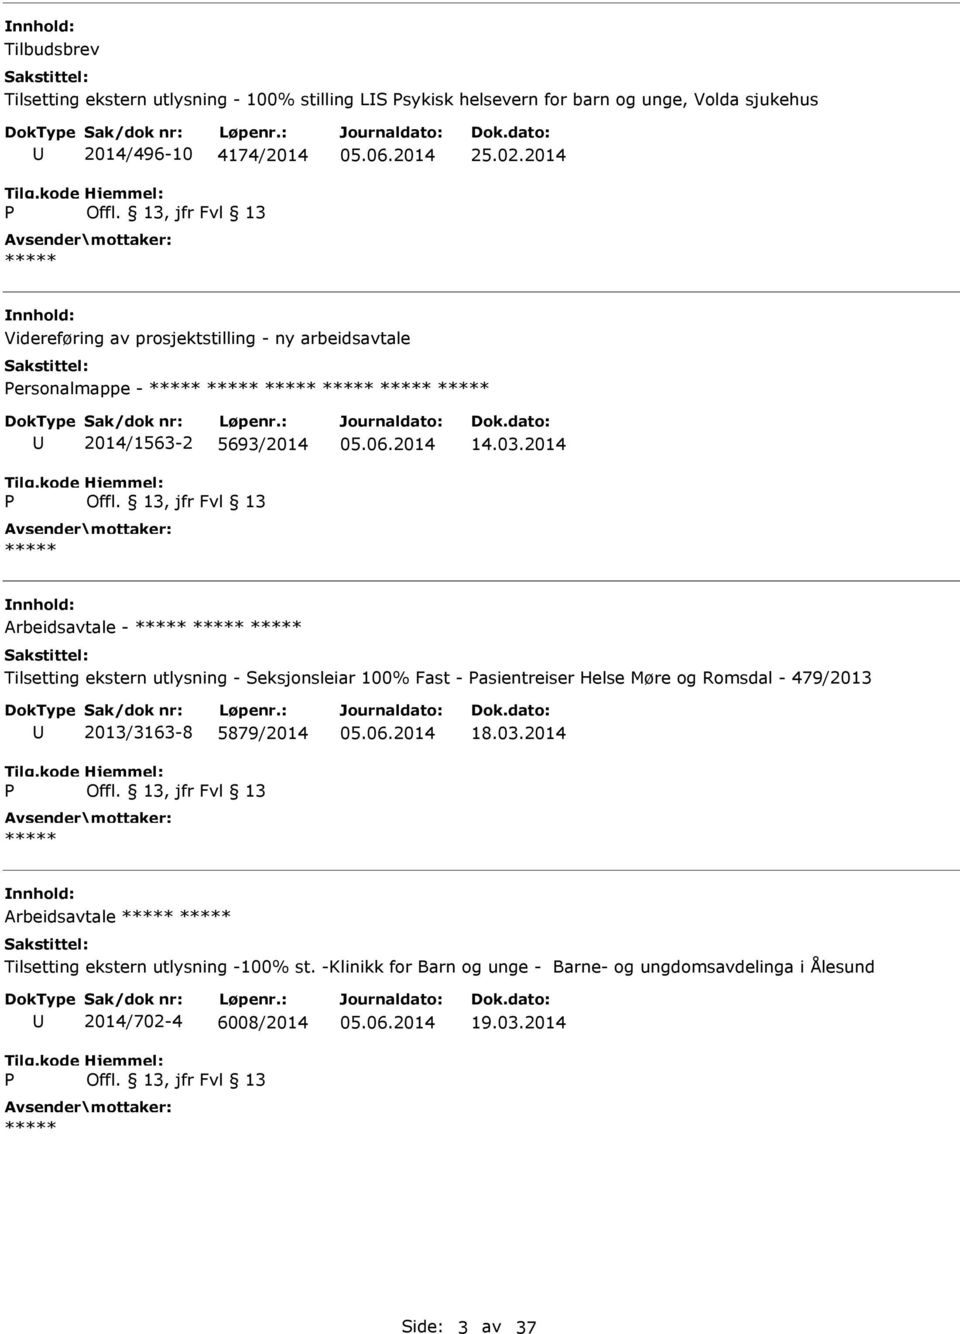 2014 Arbeidsavtale - Tilsetting ekstern utlysning - Seksjonsleiar 100% Fast - asientreiser Helse Møre og Romsdal - 479/2013 2013/3163-8